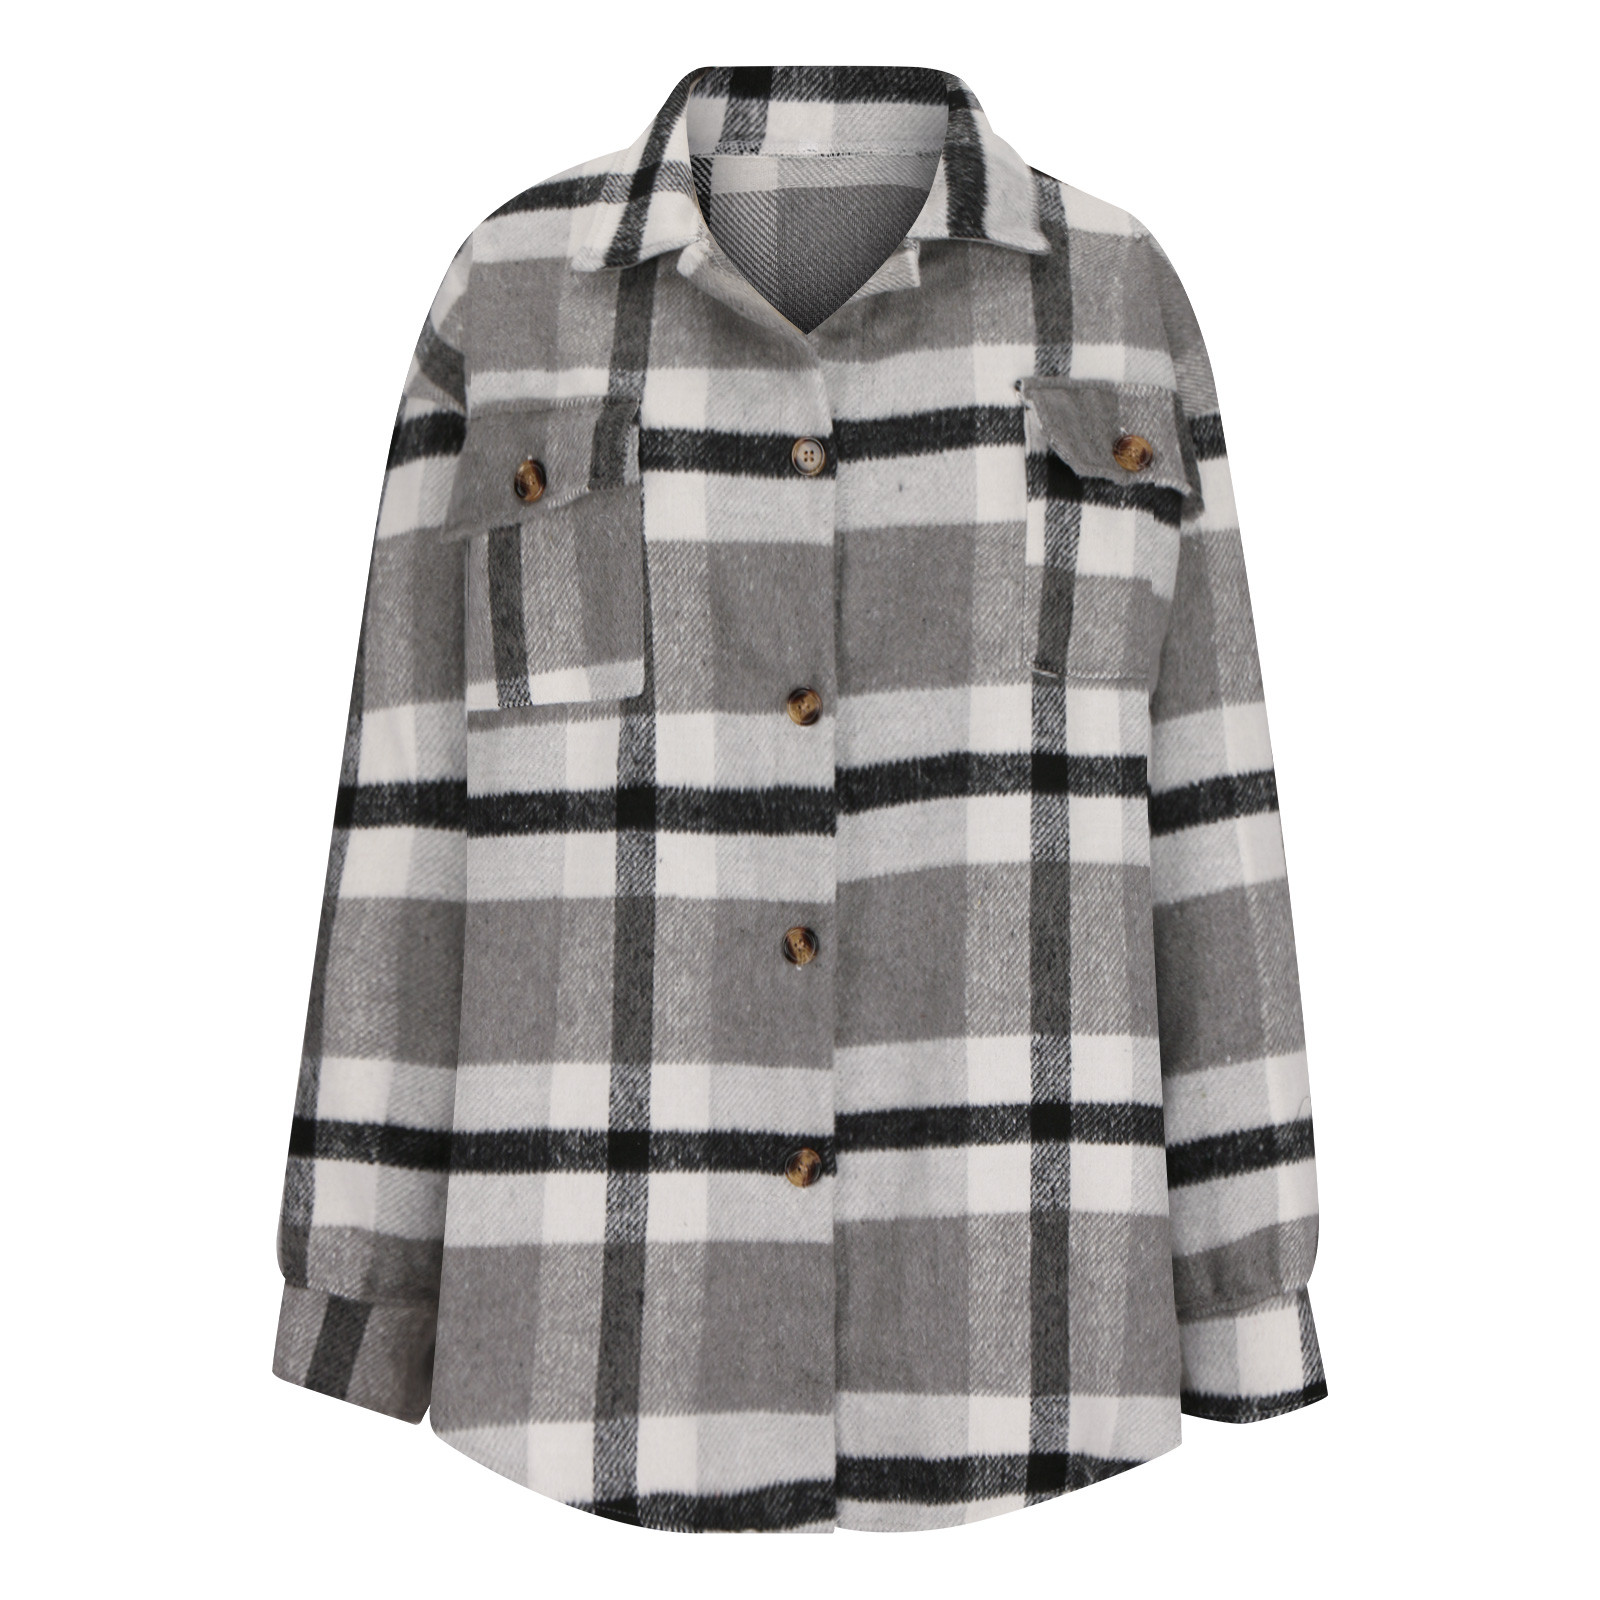 Lovskoo Women's Plaid Shacket Jacket Flannel Long Sleeve Button Down ...